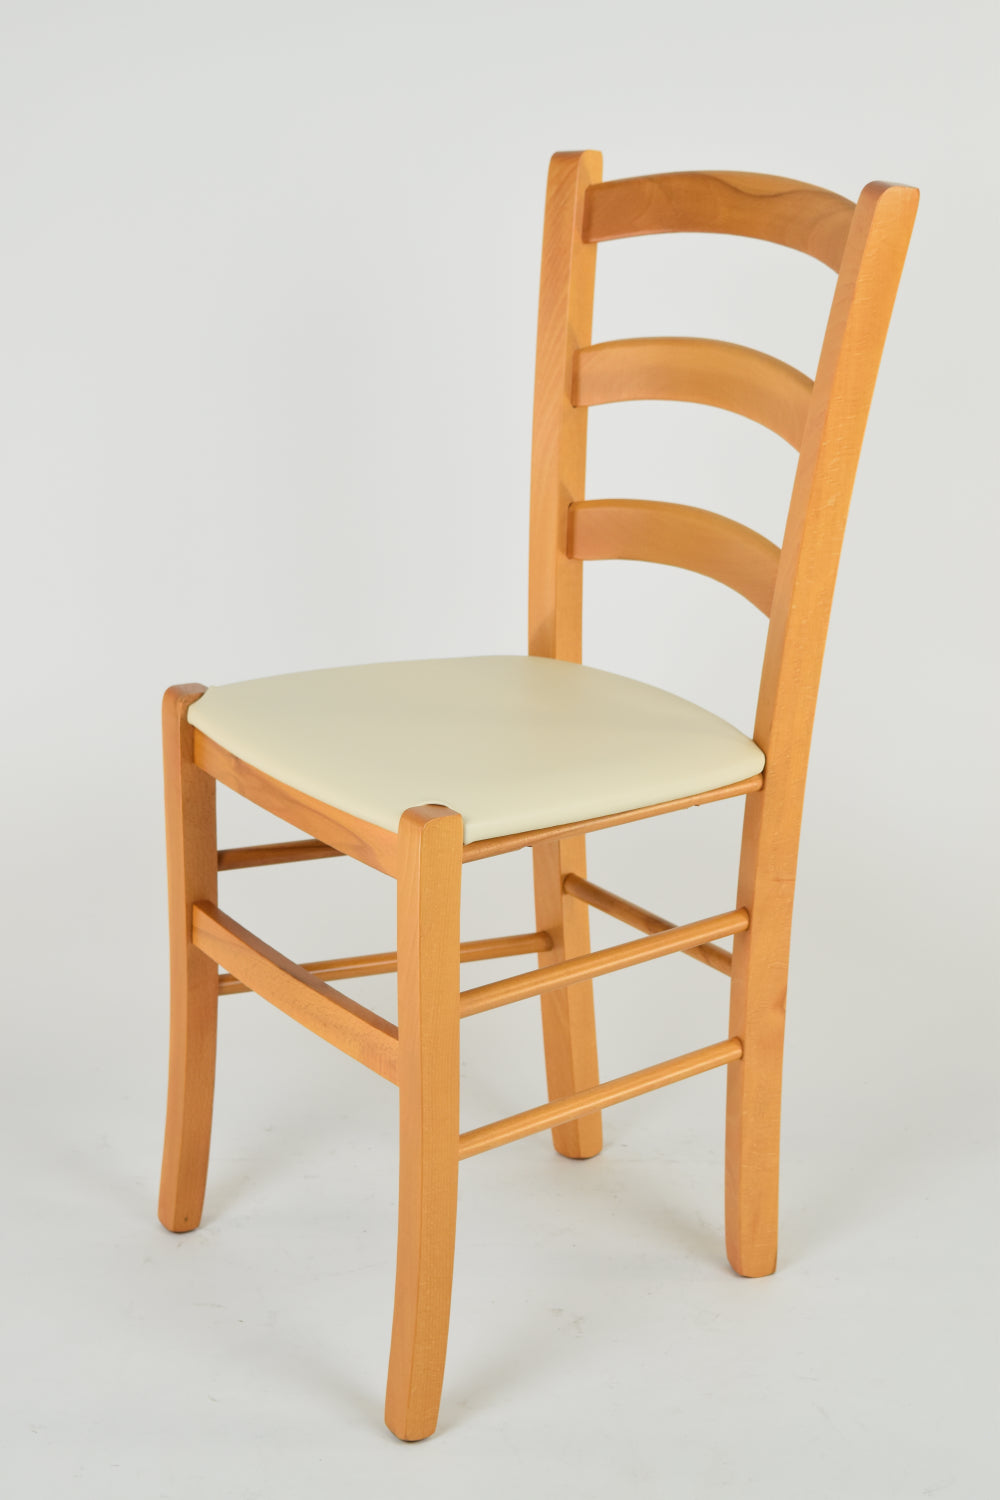 Tommychairs - Set 2 sillas de Cocina y Comedor Venice, Estructura en Madera de Haya Color Miel y Asiento tapizado en Polipiel Color Marfil